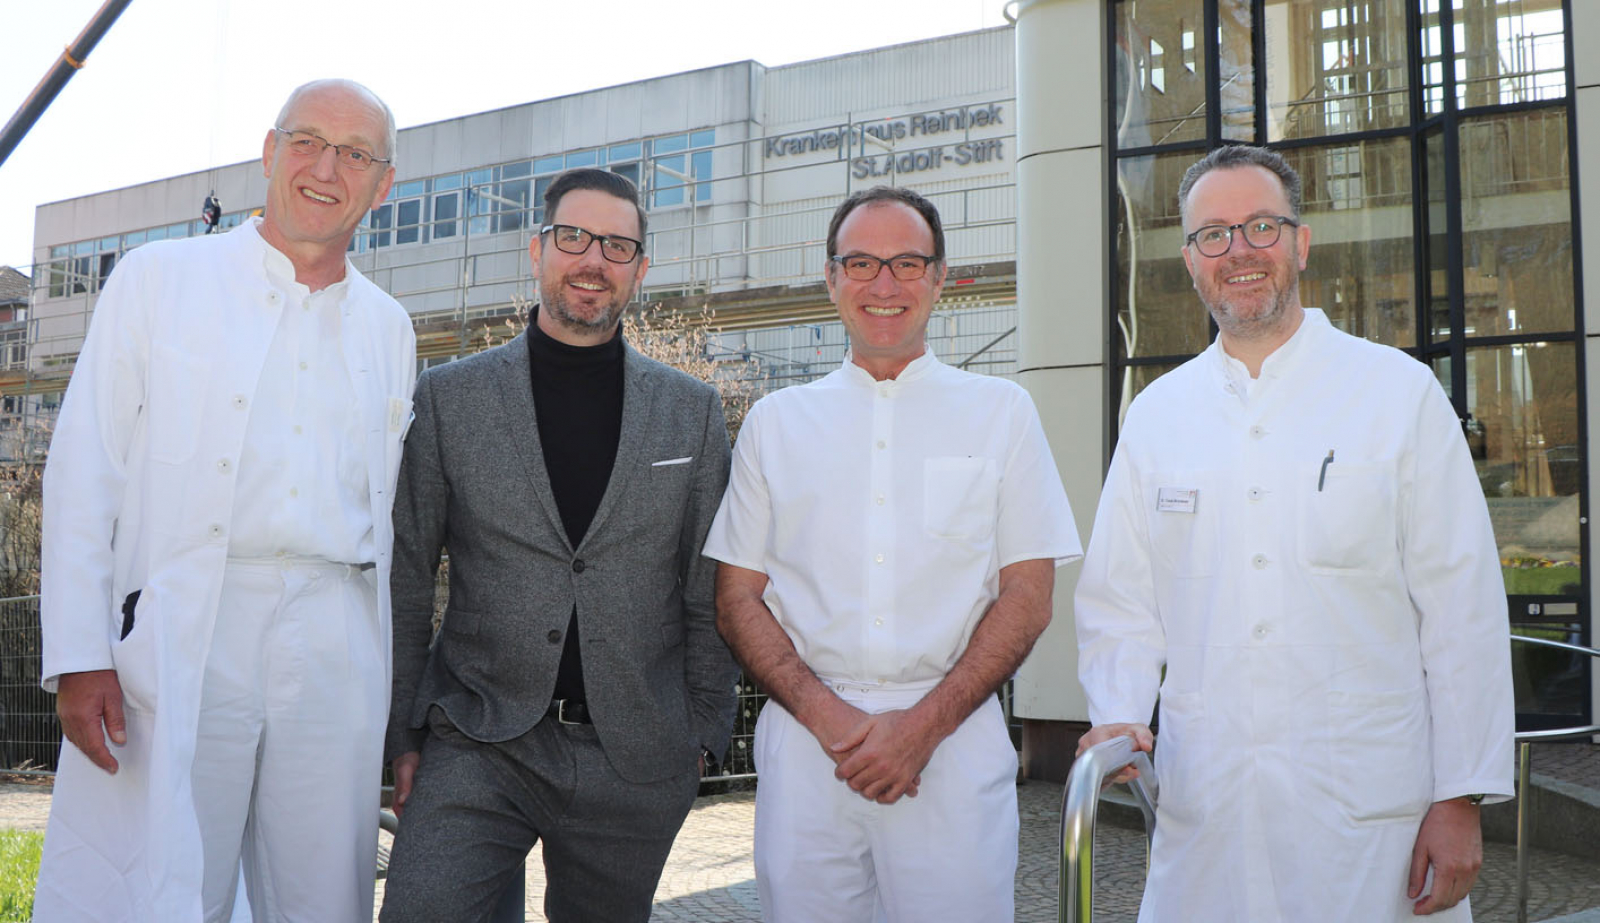  Als ärztliche Doppelspitze bauen Dr. Walter Wagner und Dr. Claus Brunken eine Abteilung für Urologie im Krankenhaus Reinbek auf. Darüber freuen sich Krankenhausgeschäftsführer Björn Pestinger und Chirurgie-Chefarzt Prof. Dr. Tim Strate.